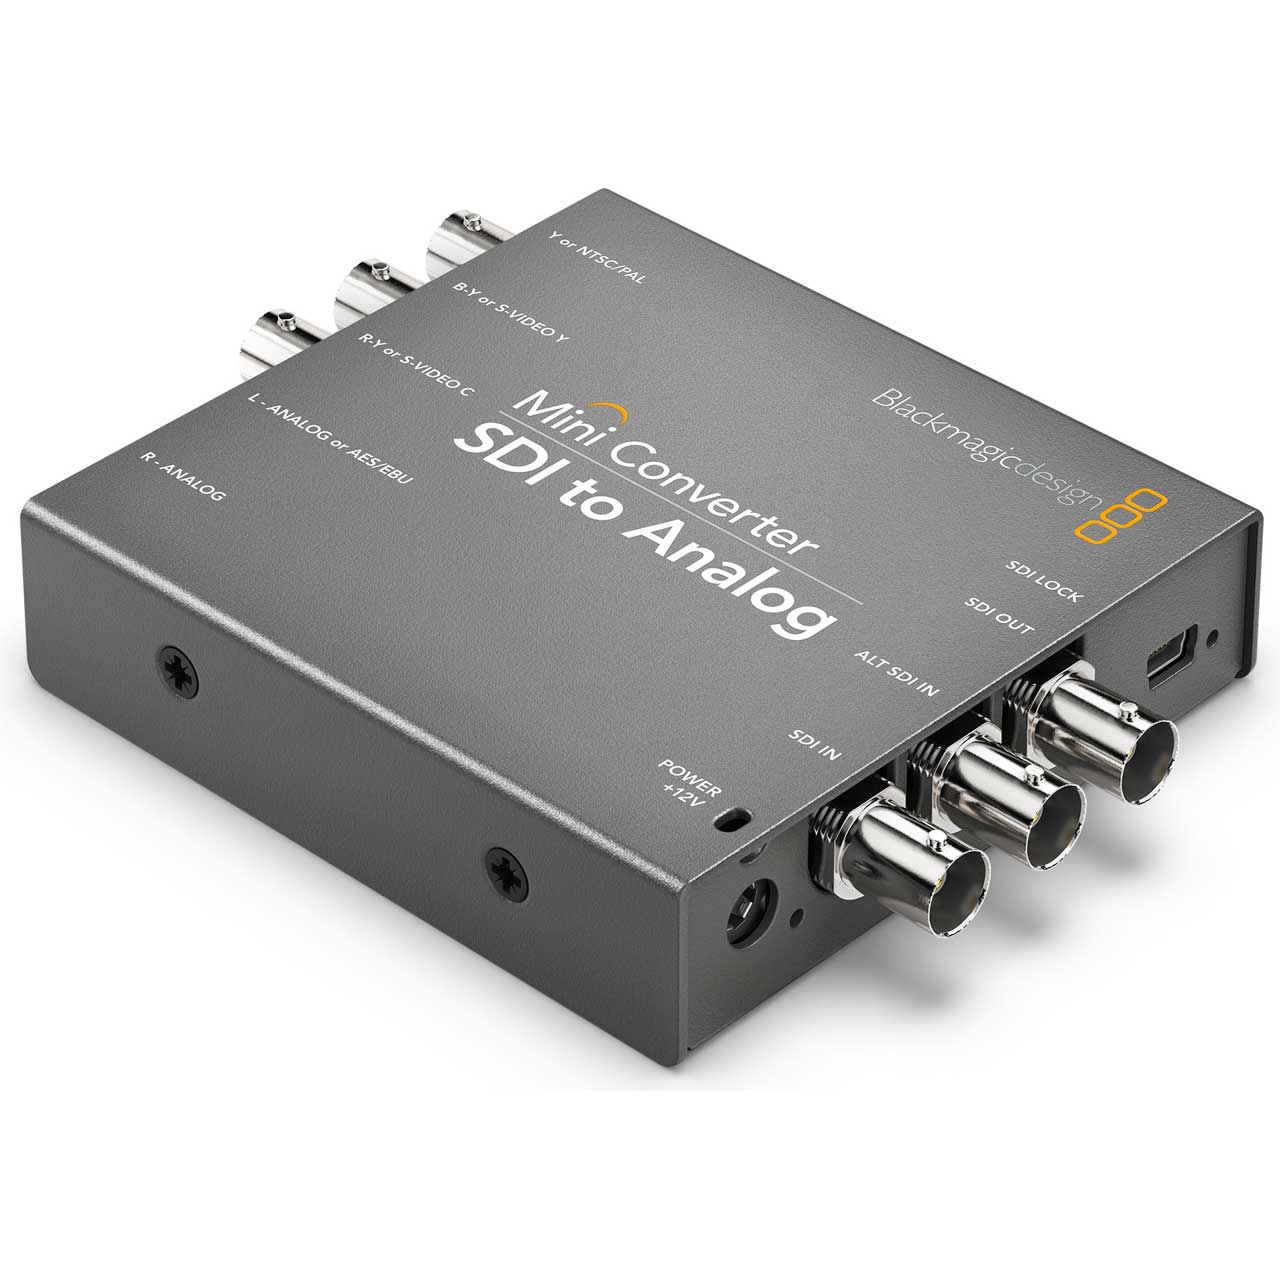 Blackmagic CONVMASA Mini Converter SDI to Analog with Audio